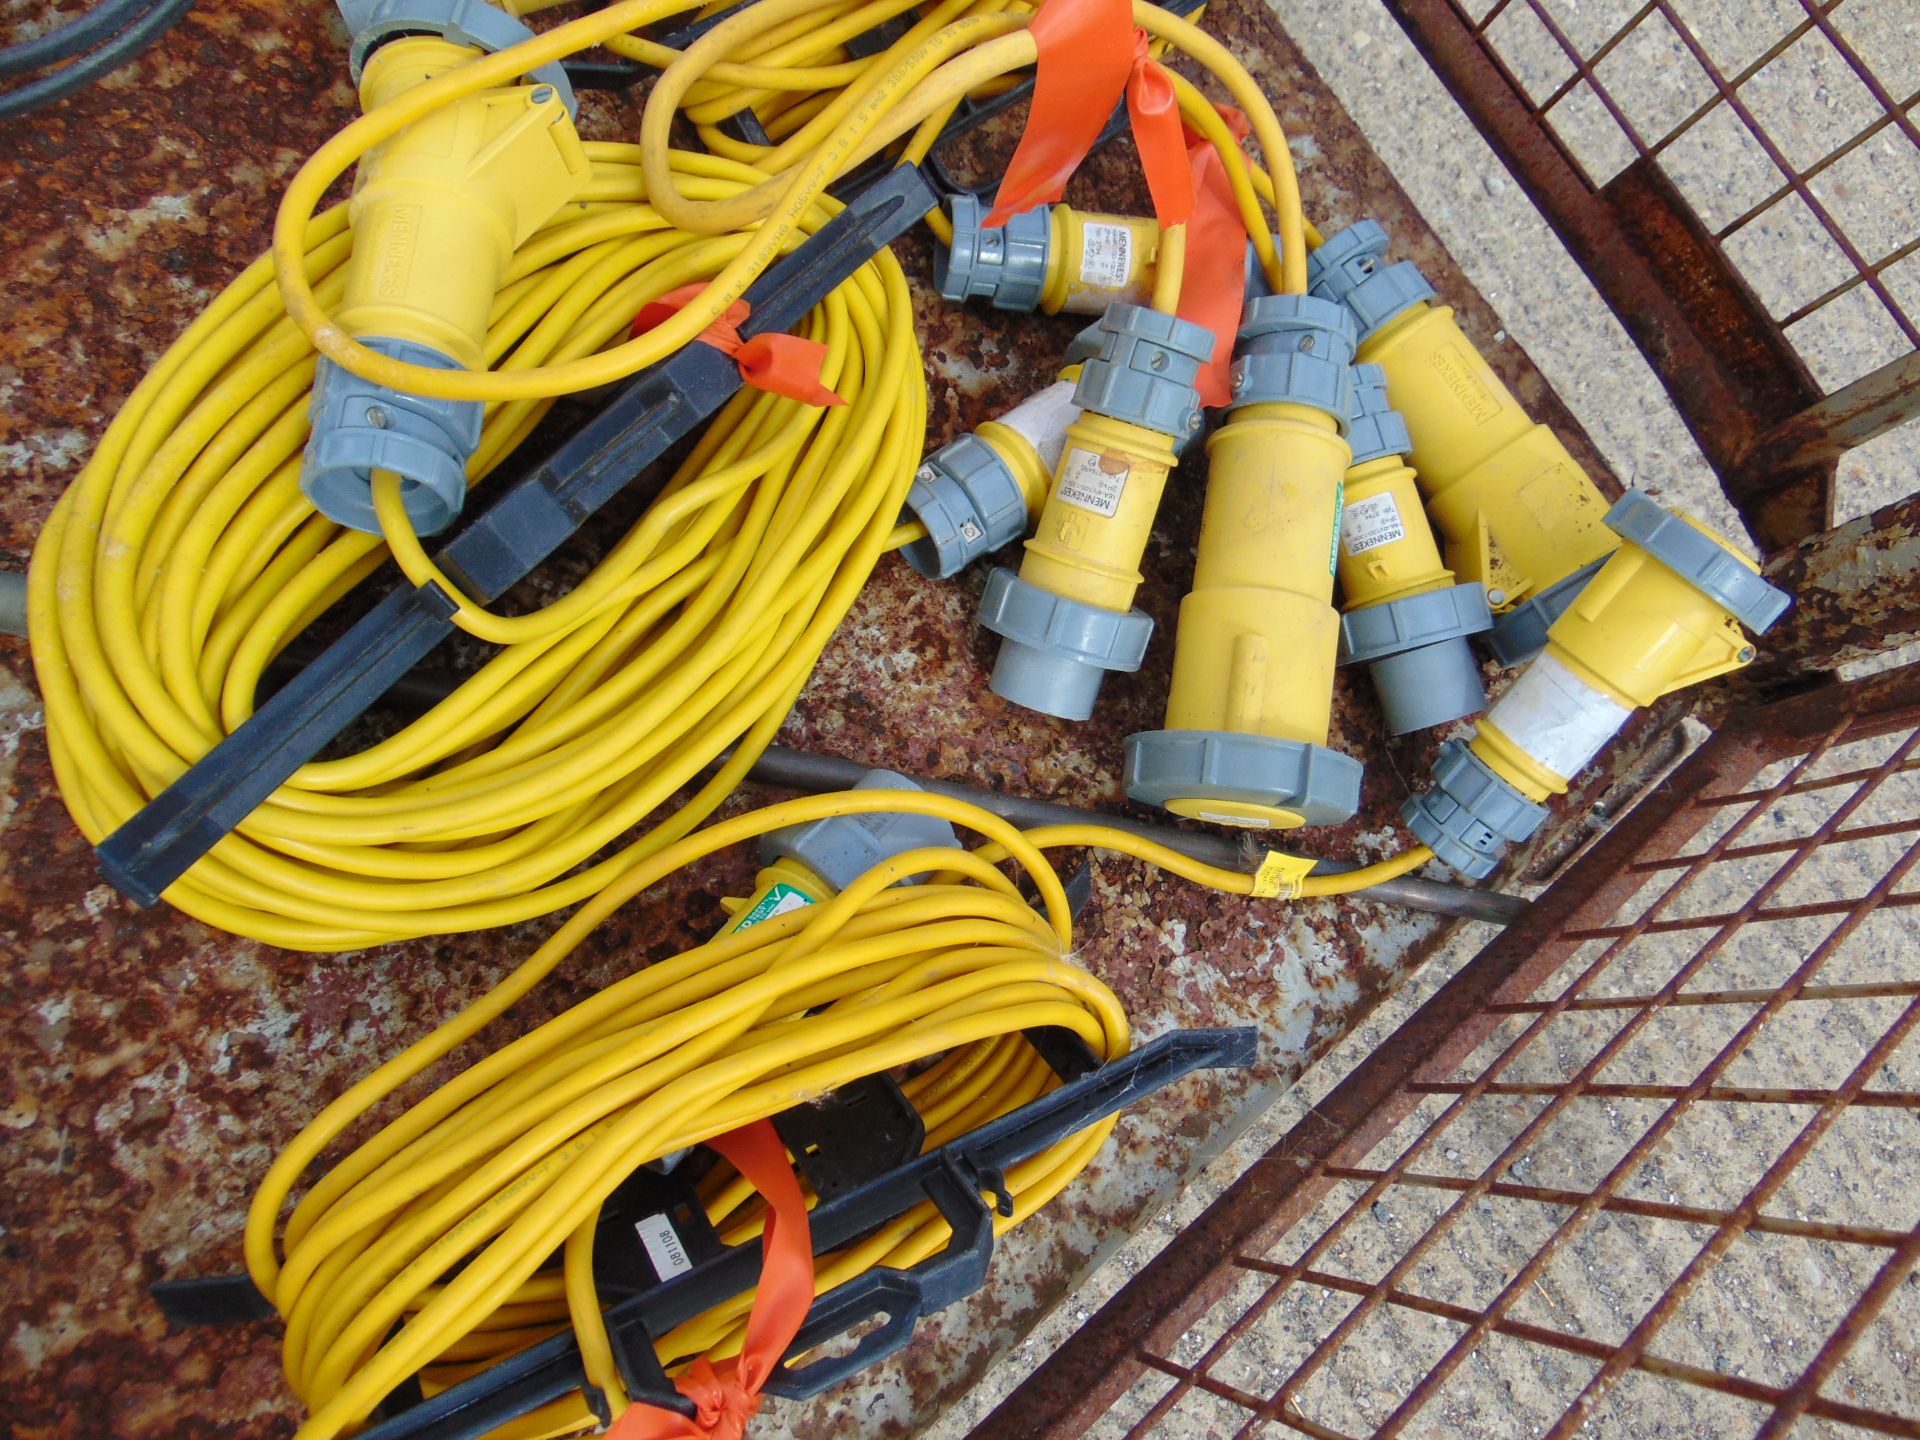 110V Cables & Mennekes 110V Distribution Units - Image 5 of 6